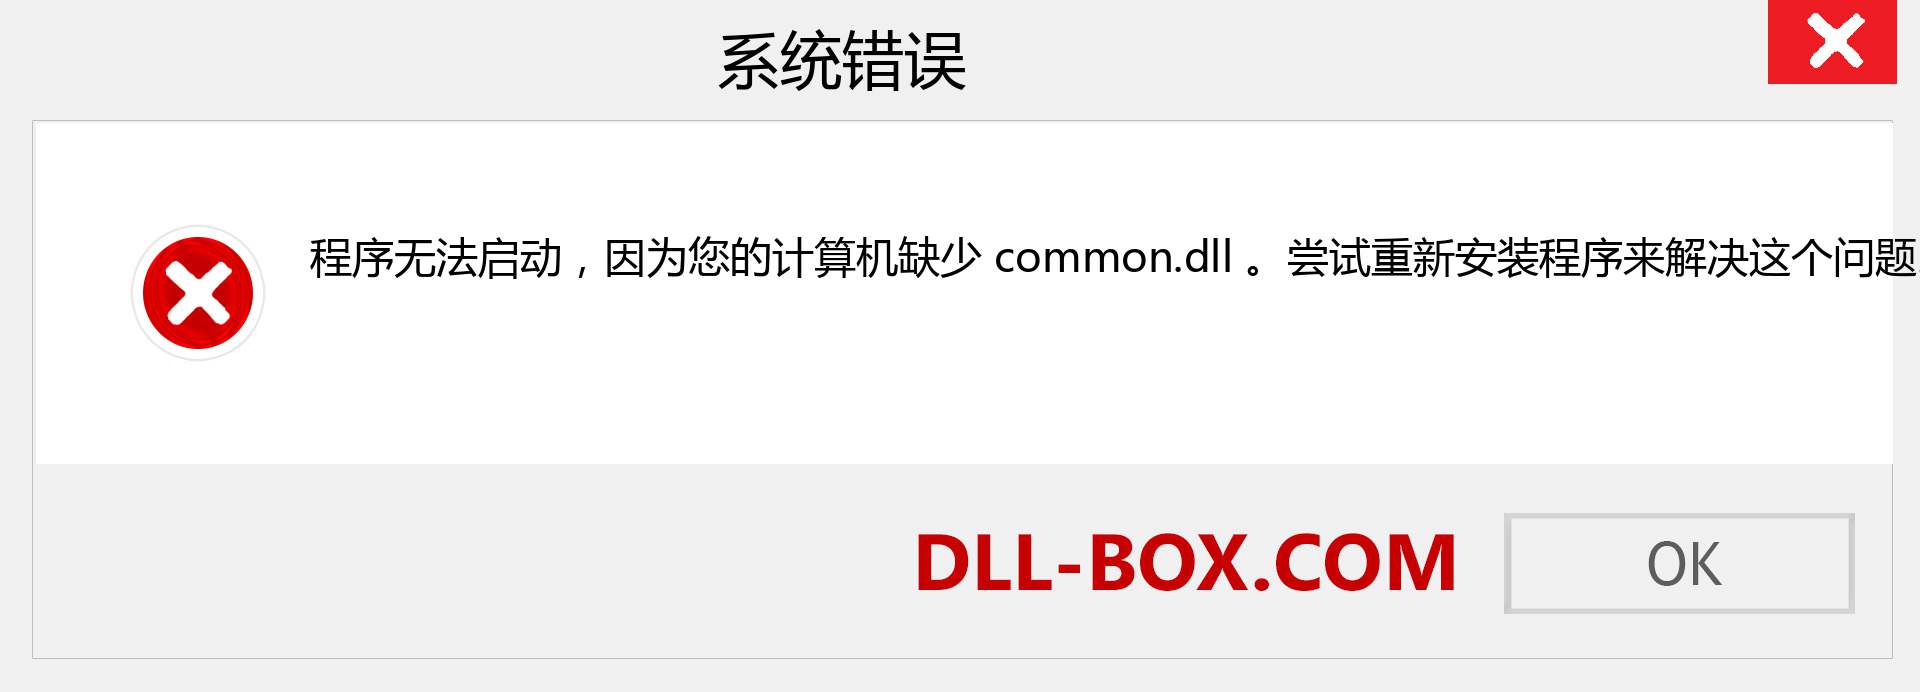 common.dll 文件丢失？。 适用于 Windows 7、8、10 的下载 - 修复 Windows、照片、图像上的 common dll 丢失错误